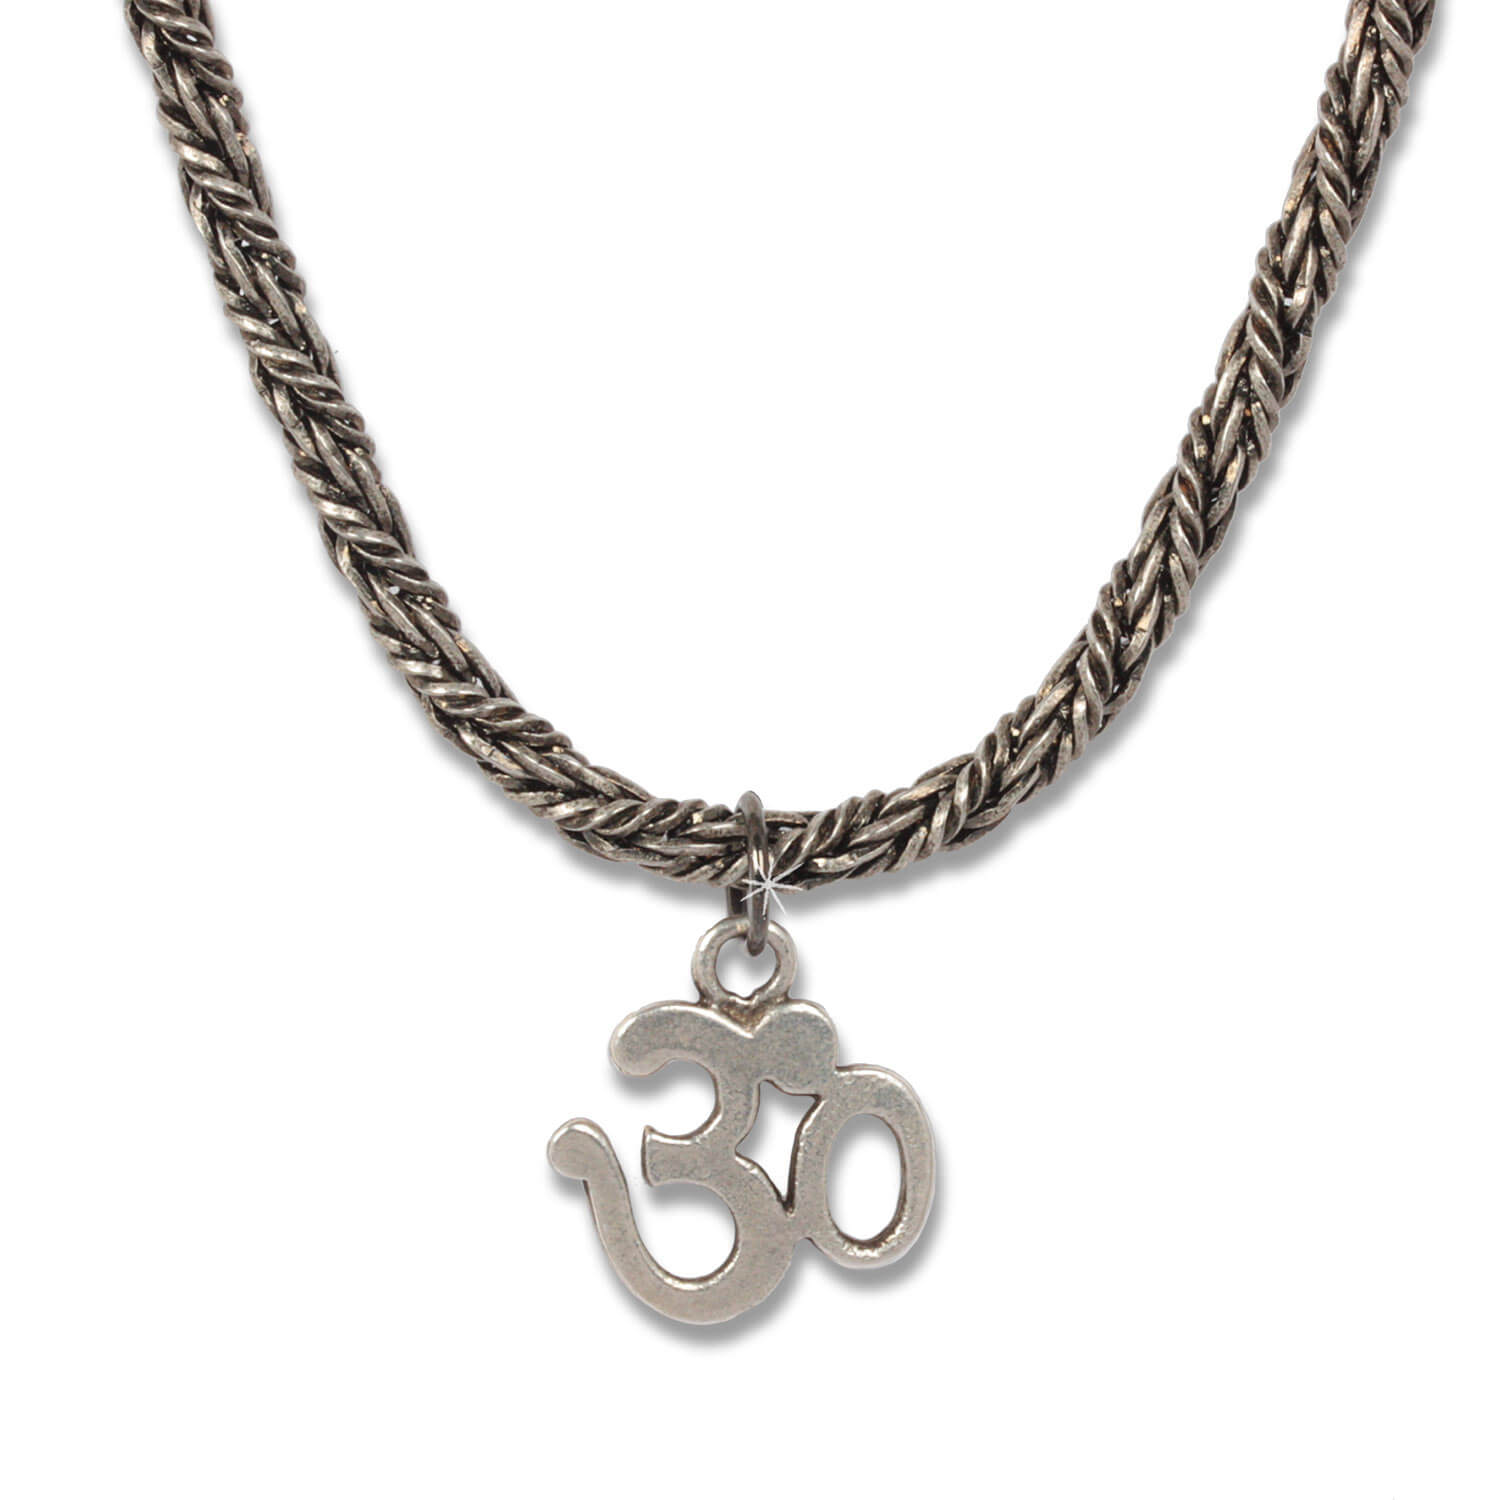 Silver OM Königskette - Indian Symbols Kette für Herren, 45 cm lang